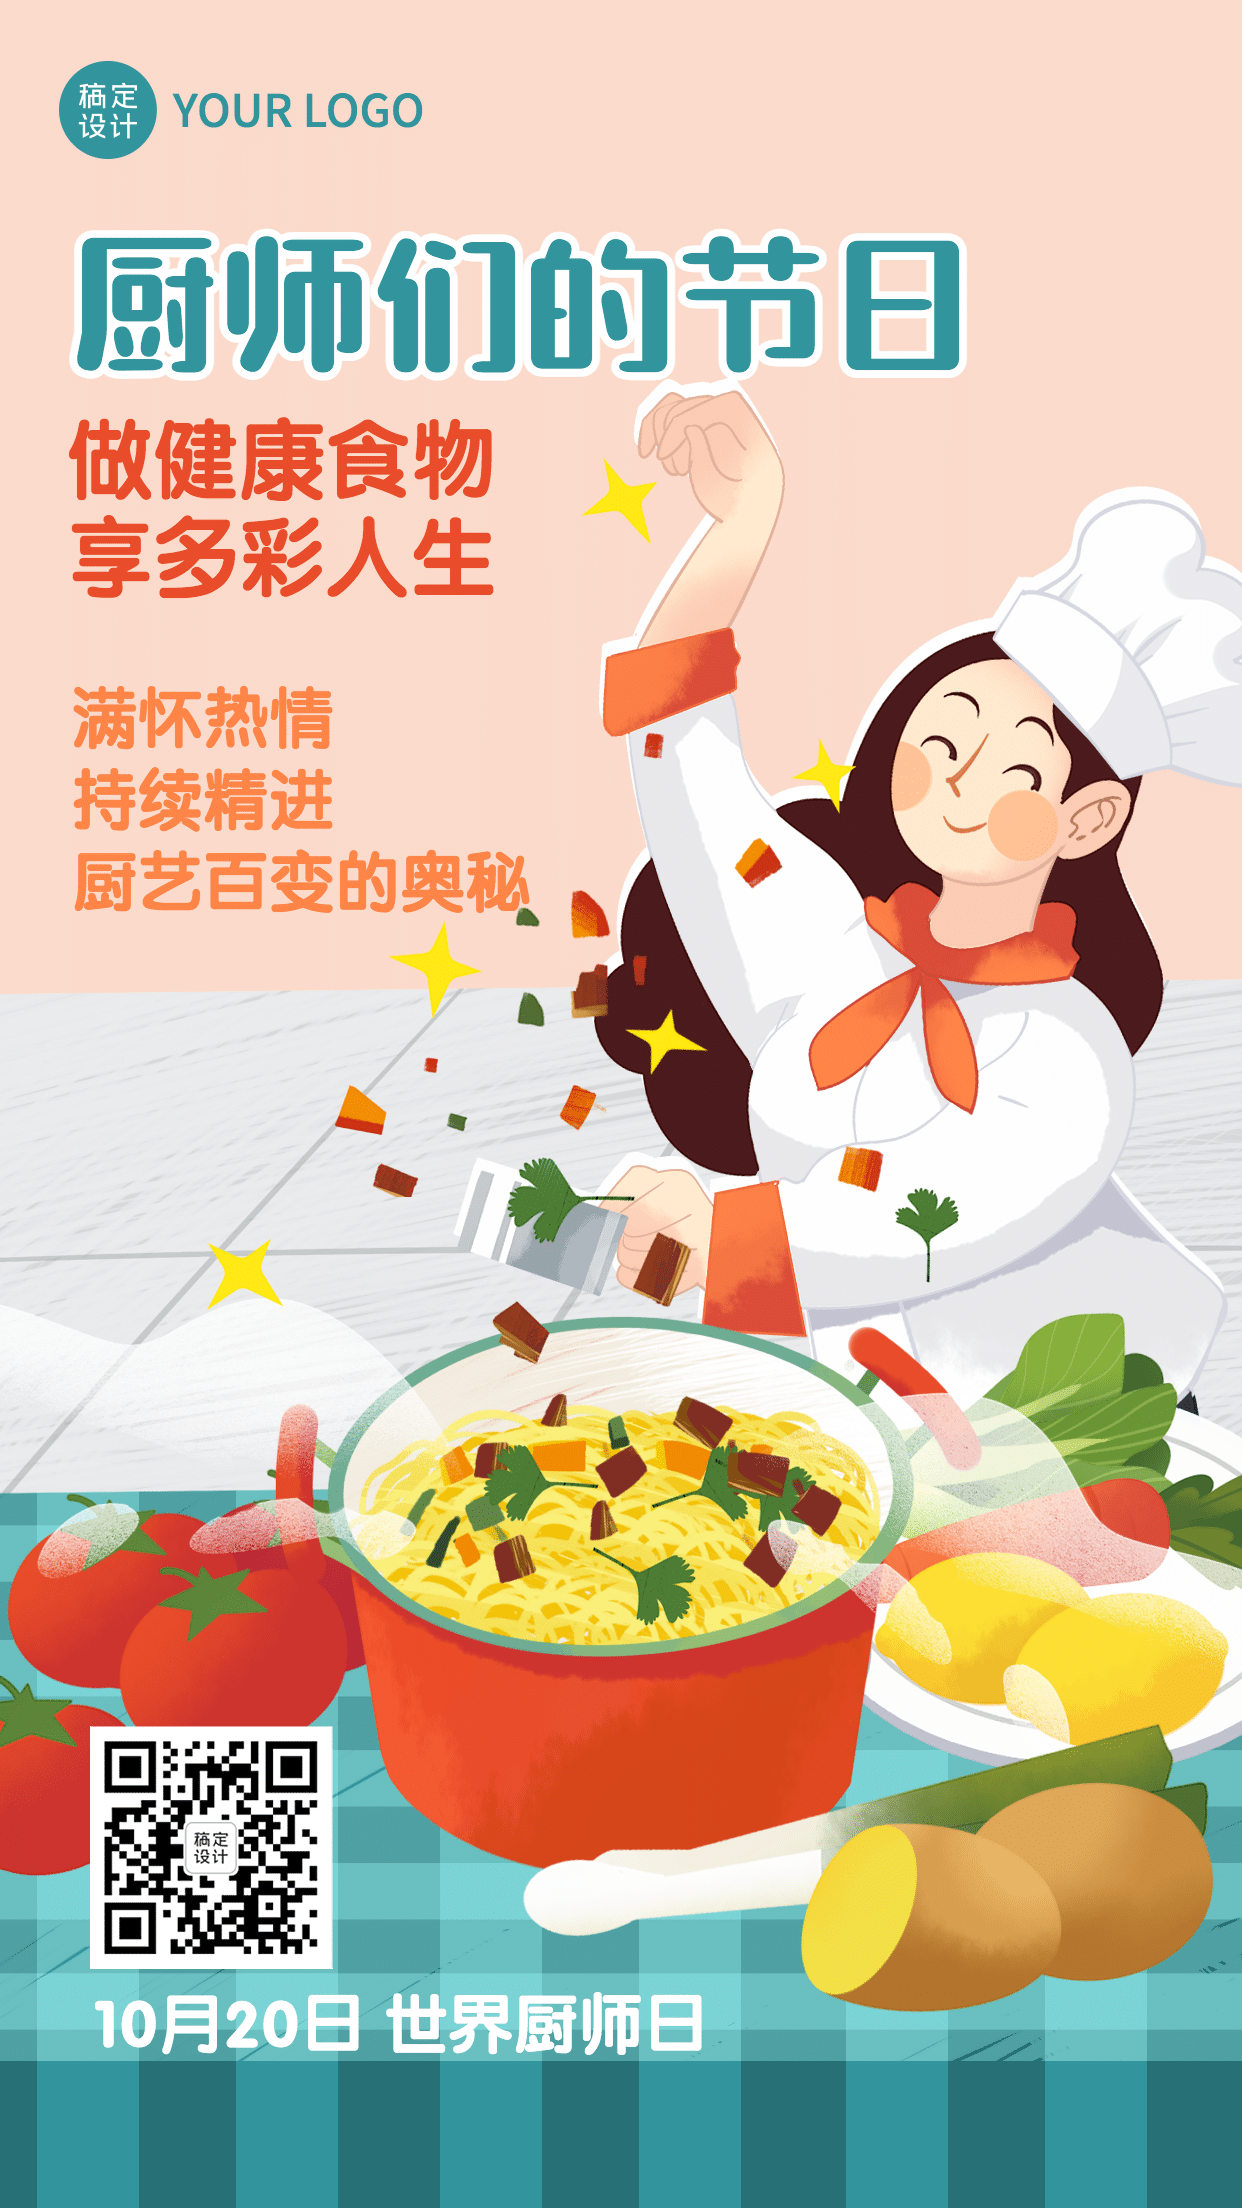 “米粉杯”美食烹饪大赛 厨神老爸谁与争锋_河北频道_凤凰网